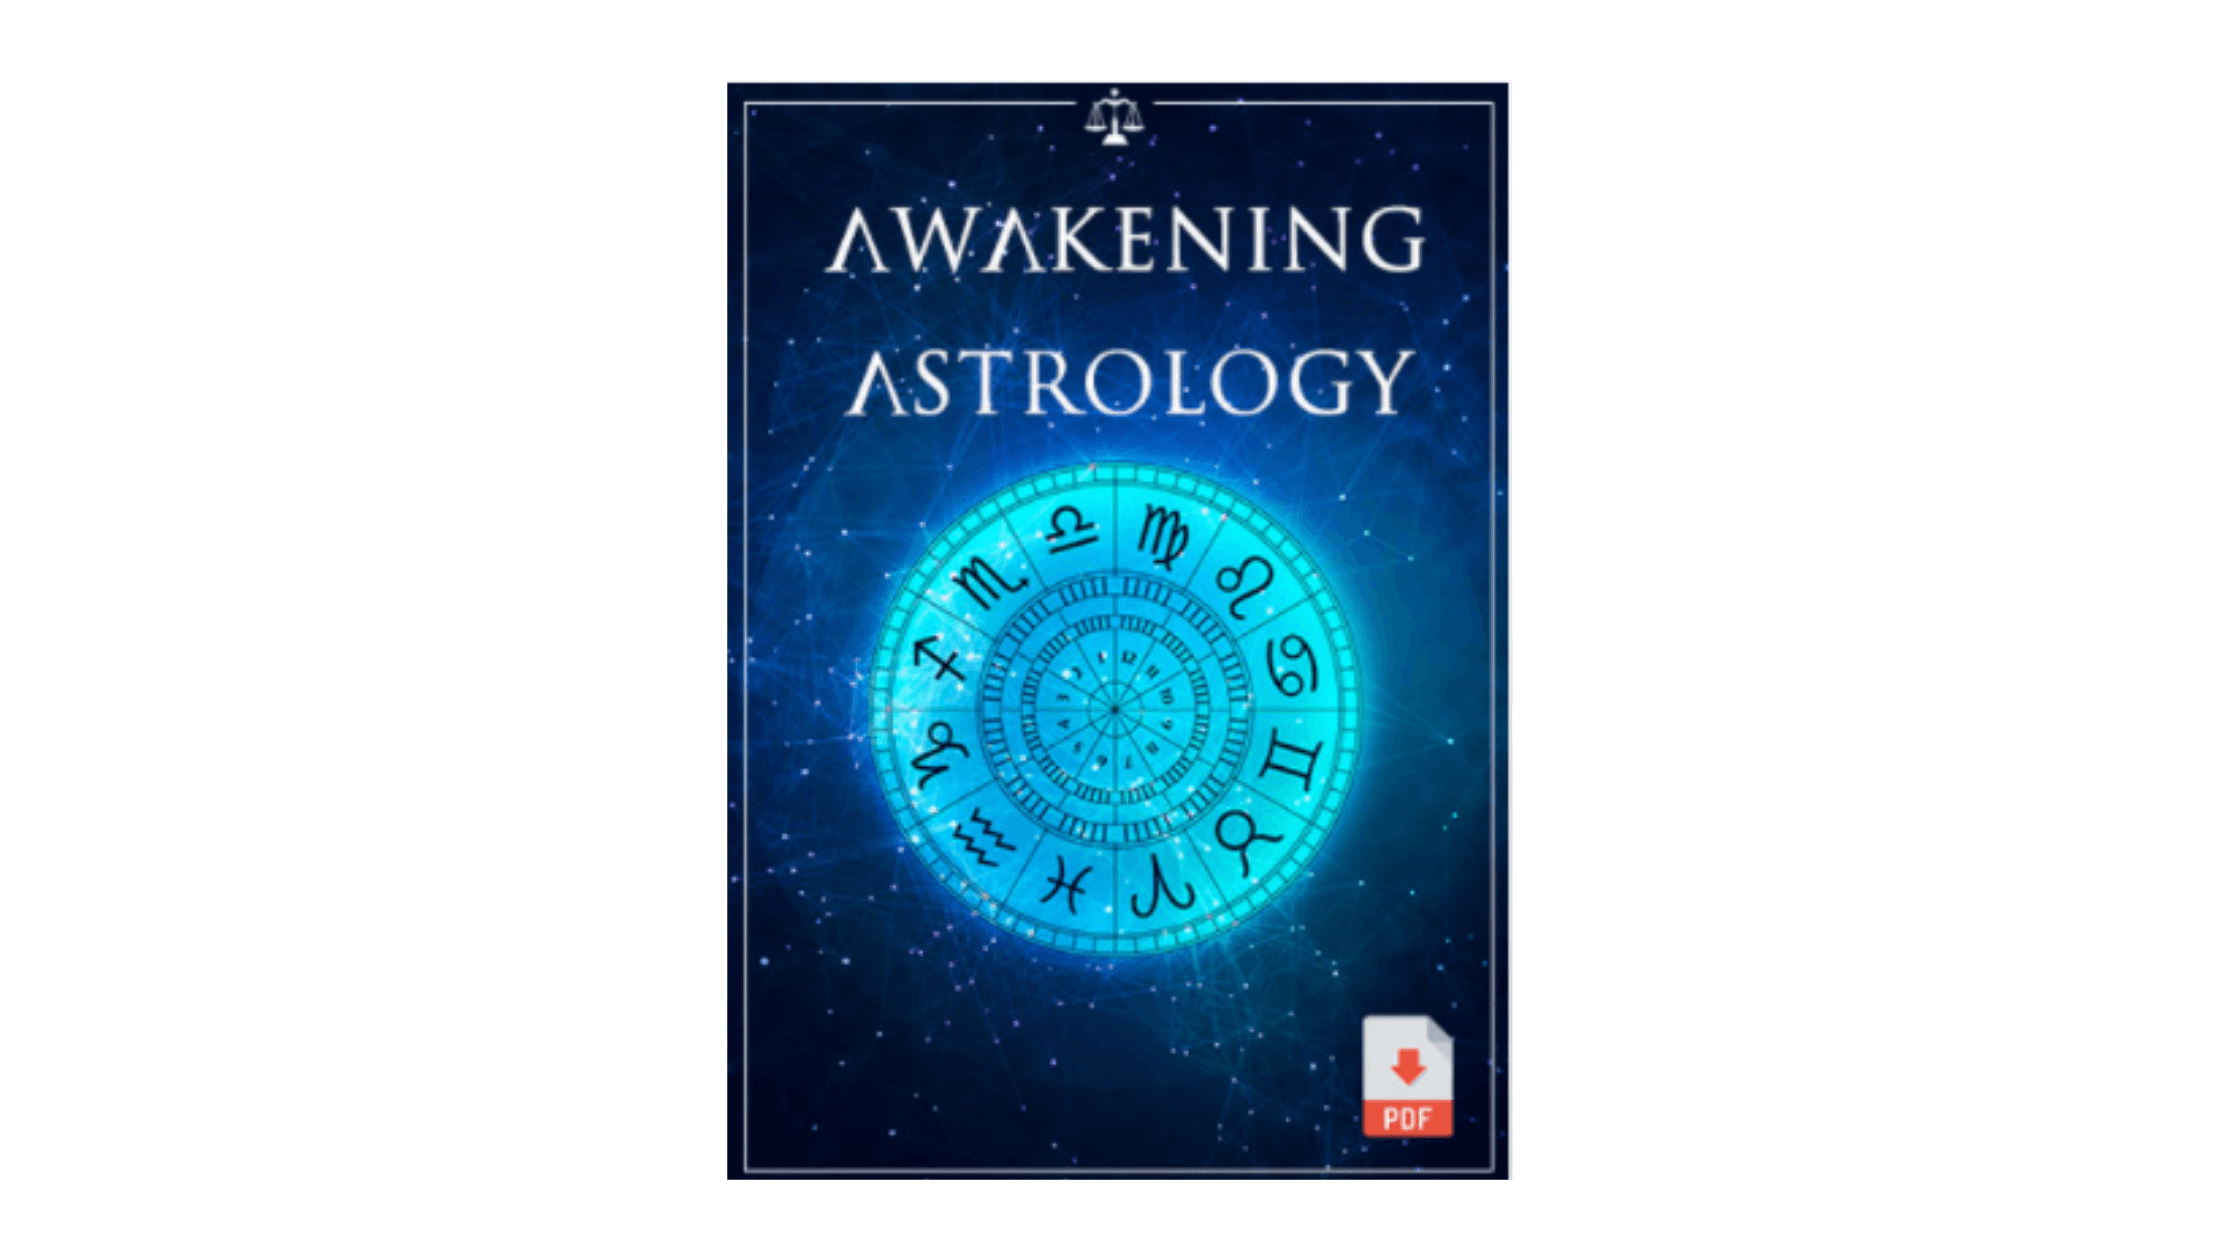 Awakening Astrology Reviews